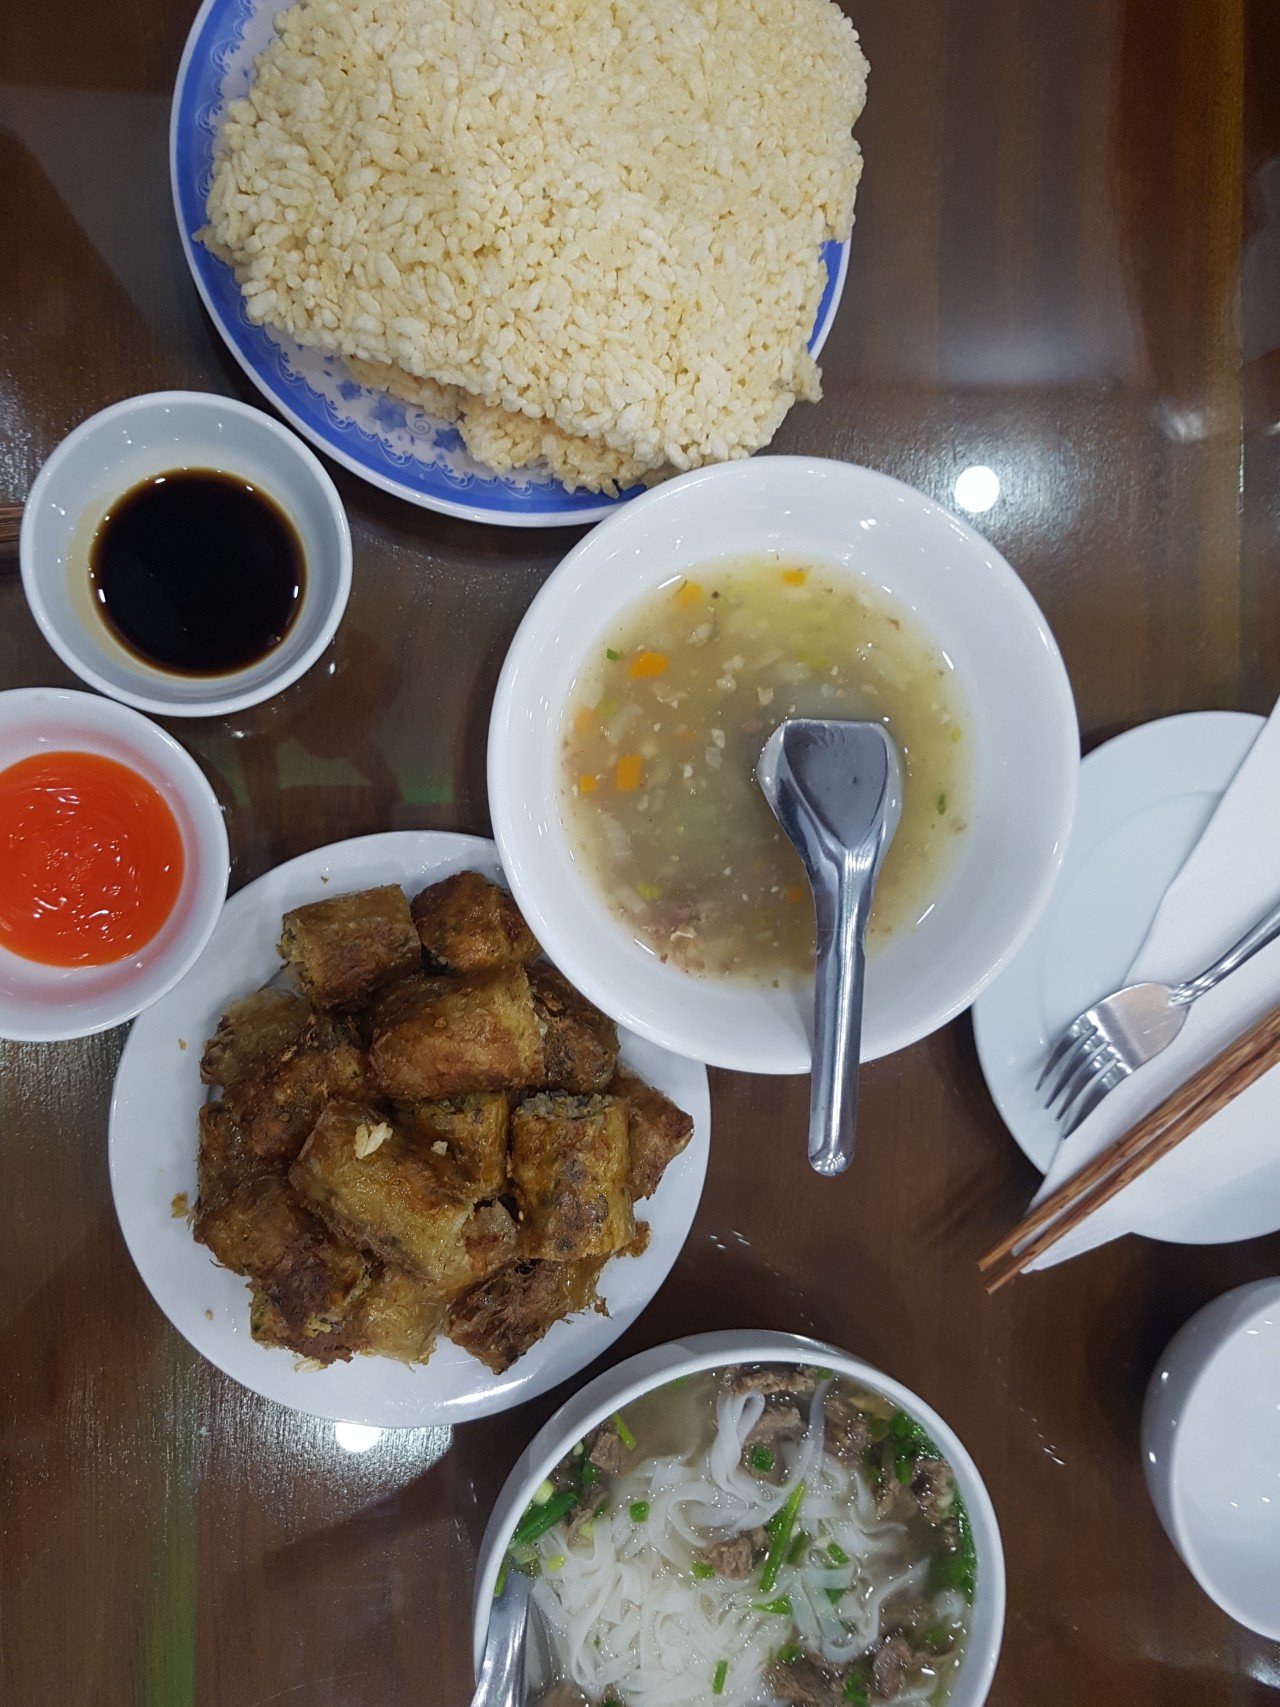 20180821_143302.jpg 베트남에서 먹었던 음식들